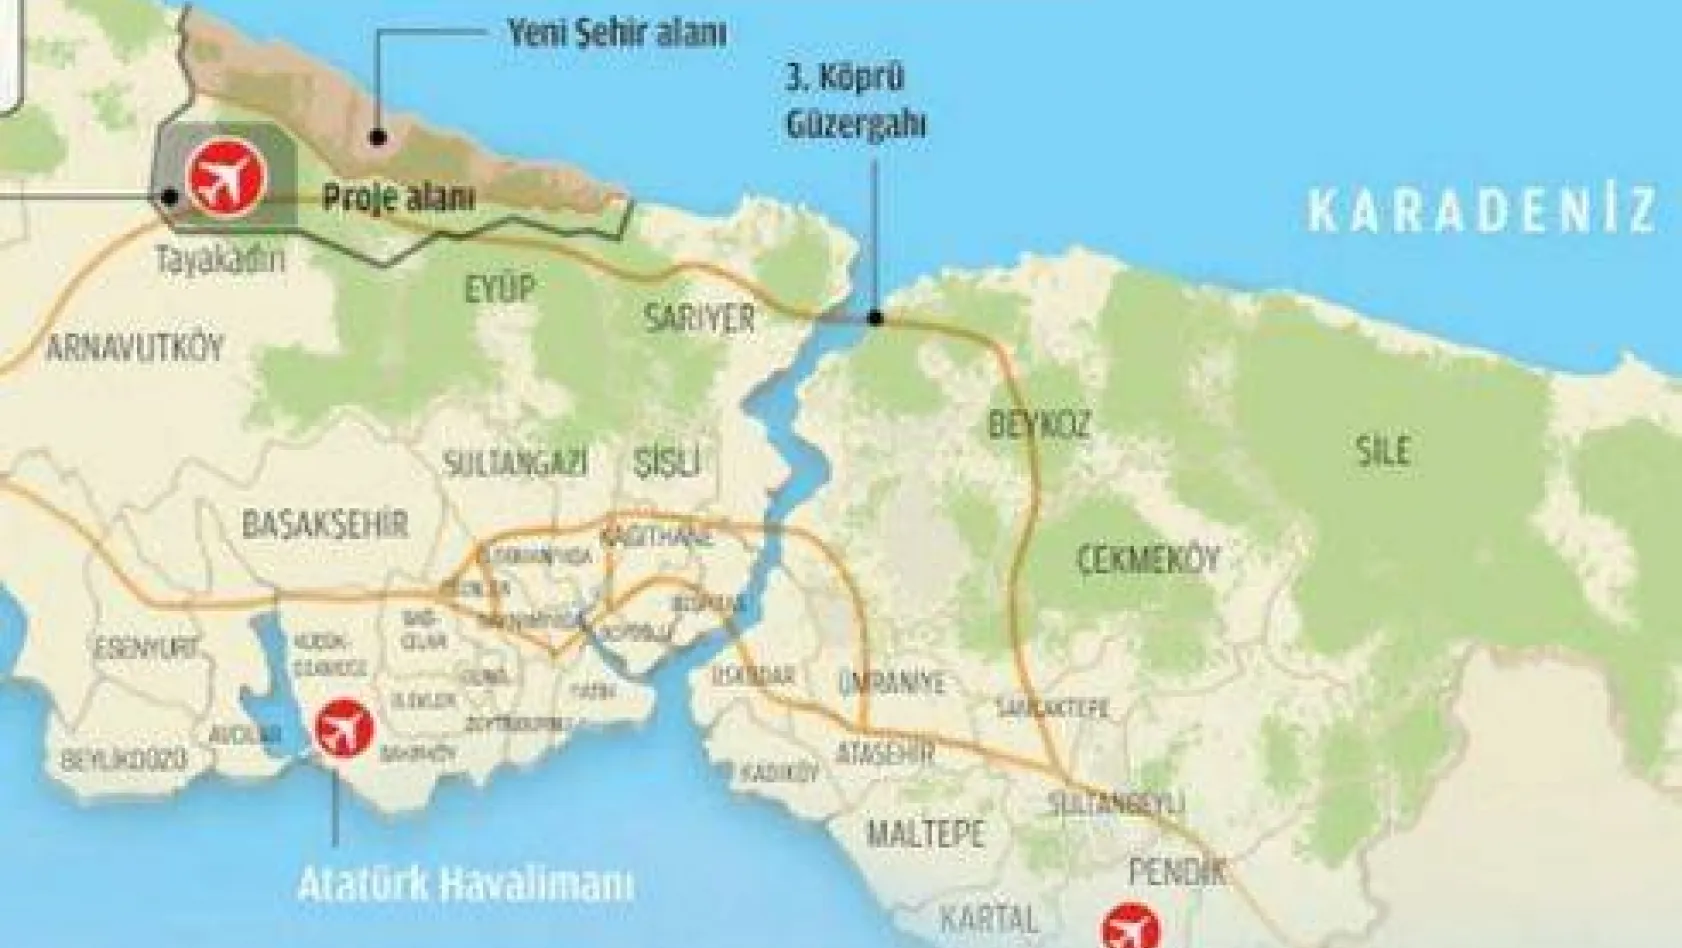 İstanbul'a yapılacak 3. havalimanın yeri belirlendi